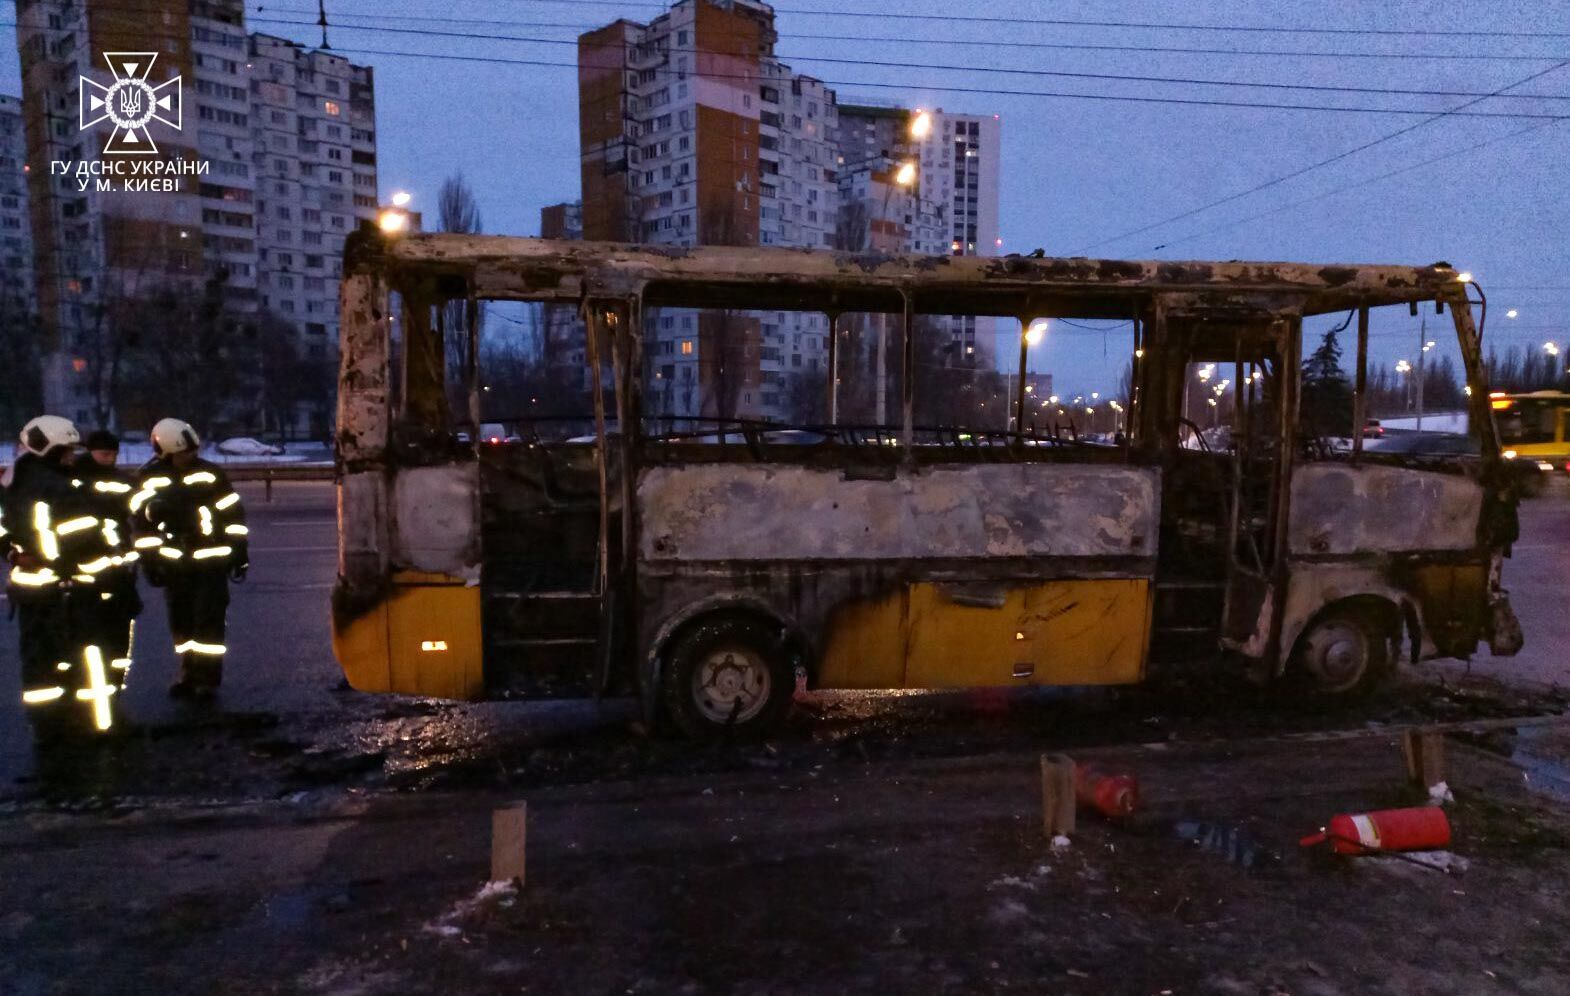 В Киеве на Теремках во время движения загорелась маршрутка: известны подробности. Фото и видео